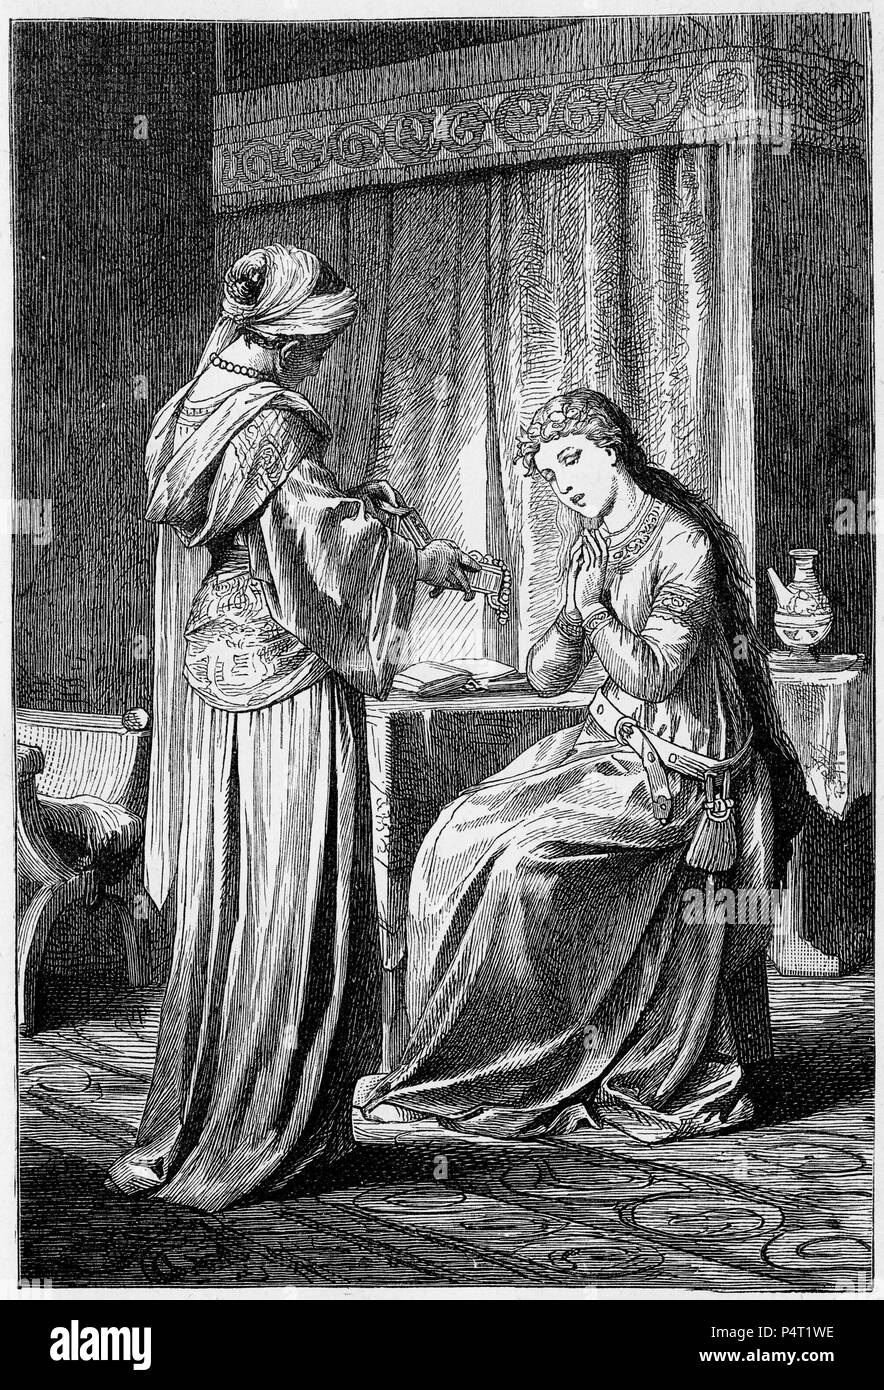 Gravure de deux femmes médiévale admirant le trésor dans une boîte de bijoux. Illustré d'une copie d'Ivanhoé, 1878. Banque D'Images